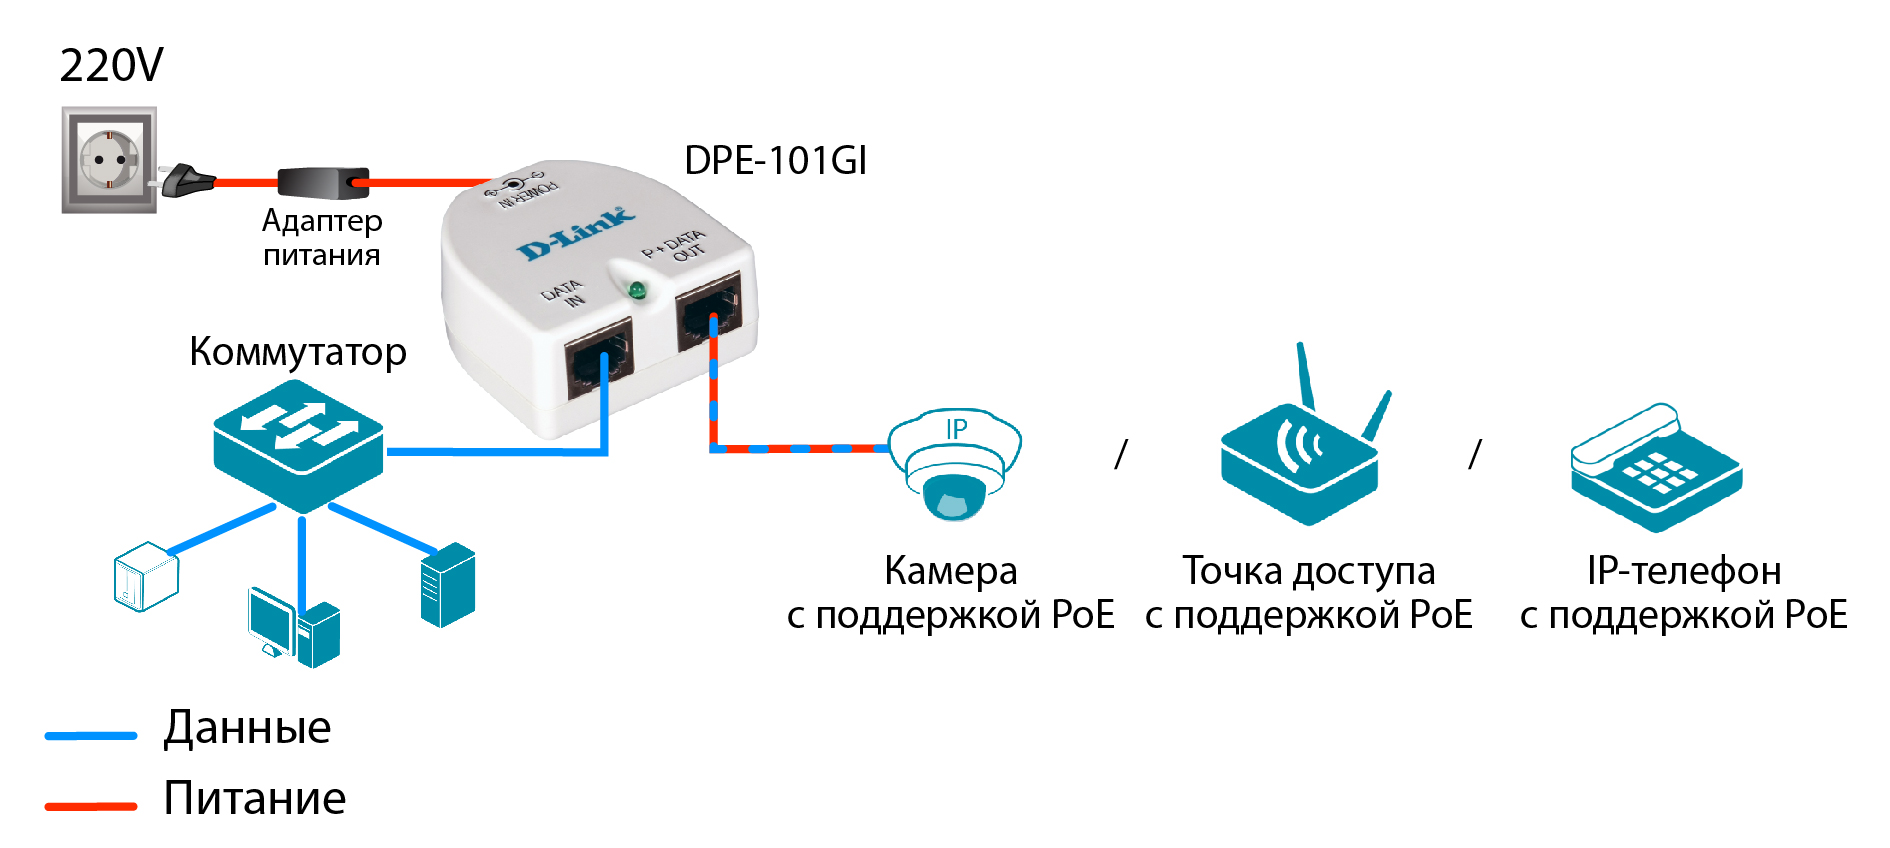 Как подключить 4 джи. Инжектор POE 12v для IP камер. Схема подключения IP камеры через POE инжектор. Схема включения POE. Блок питания POE инжектора.